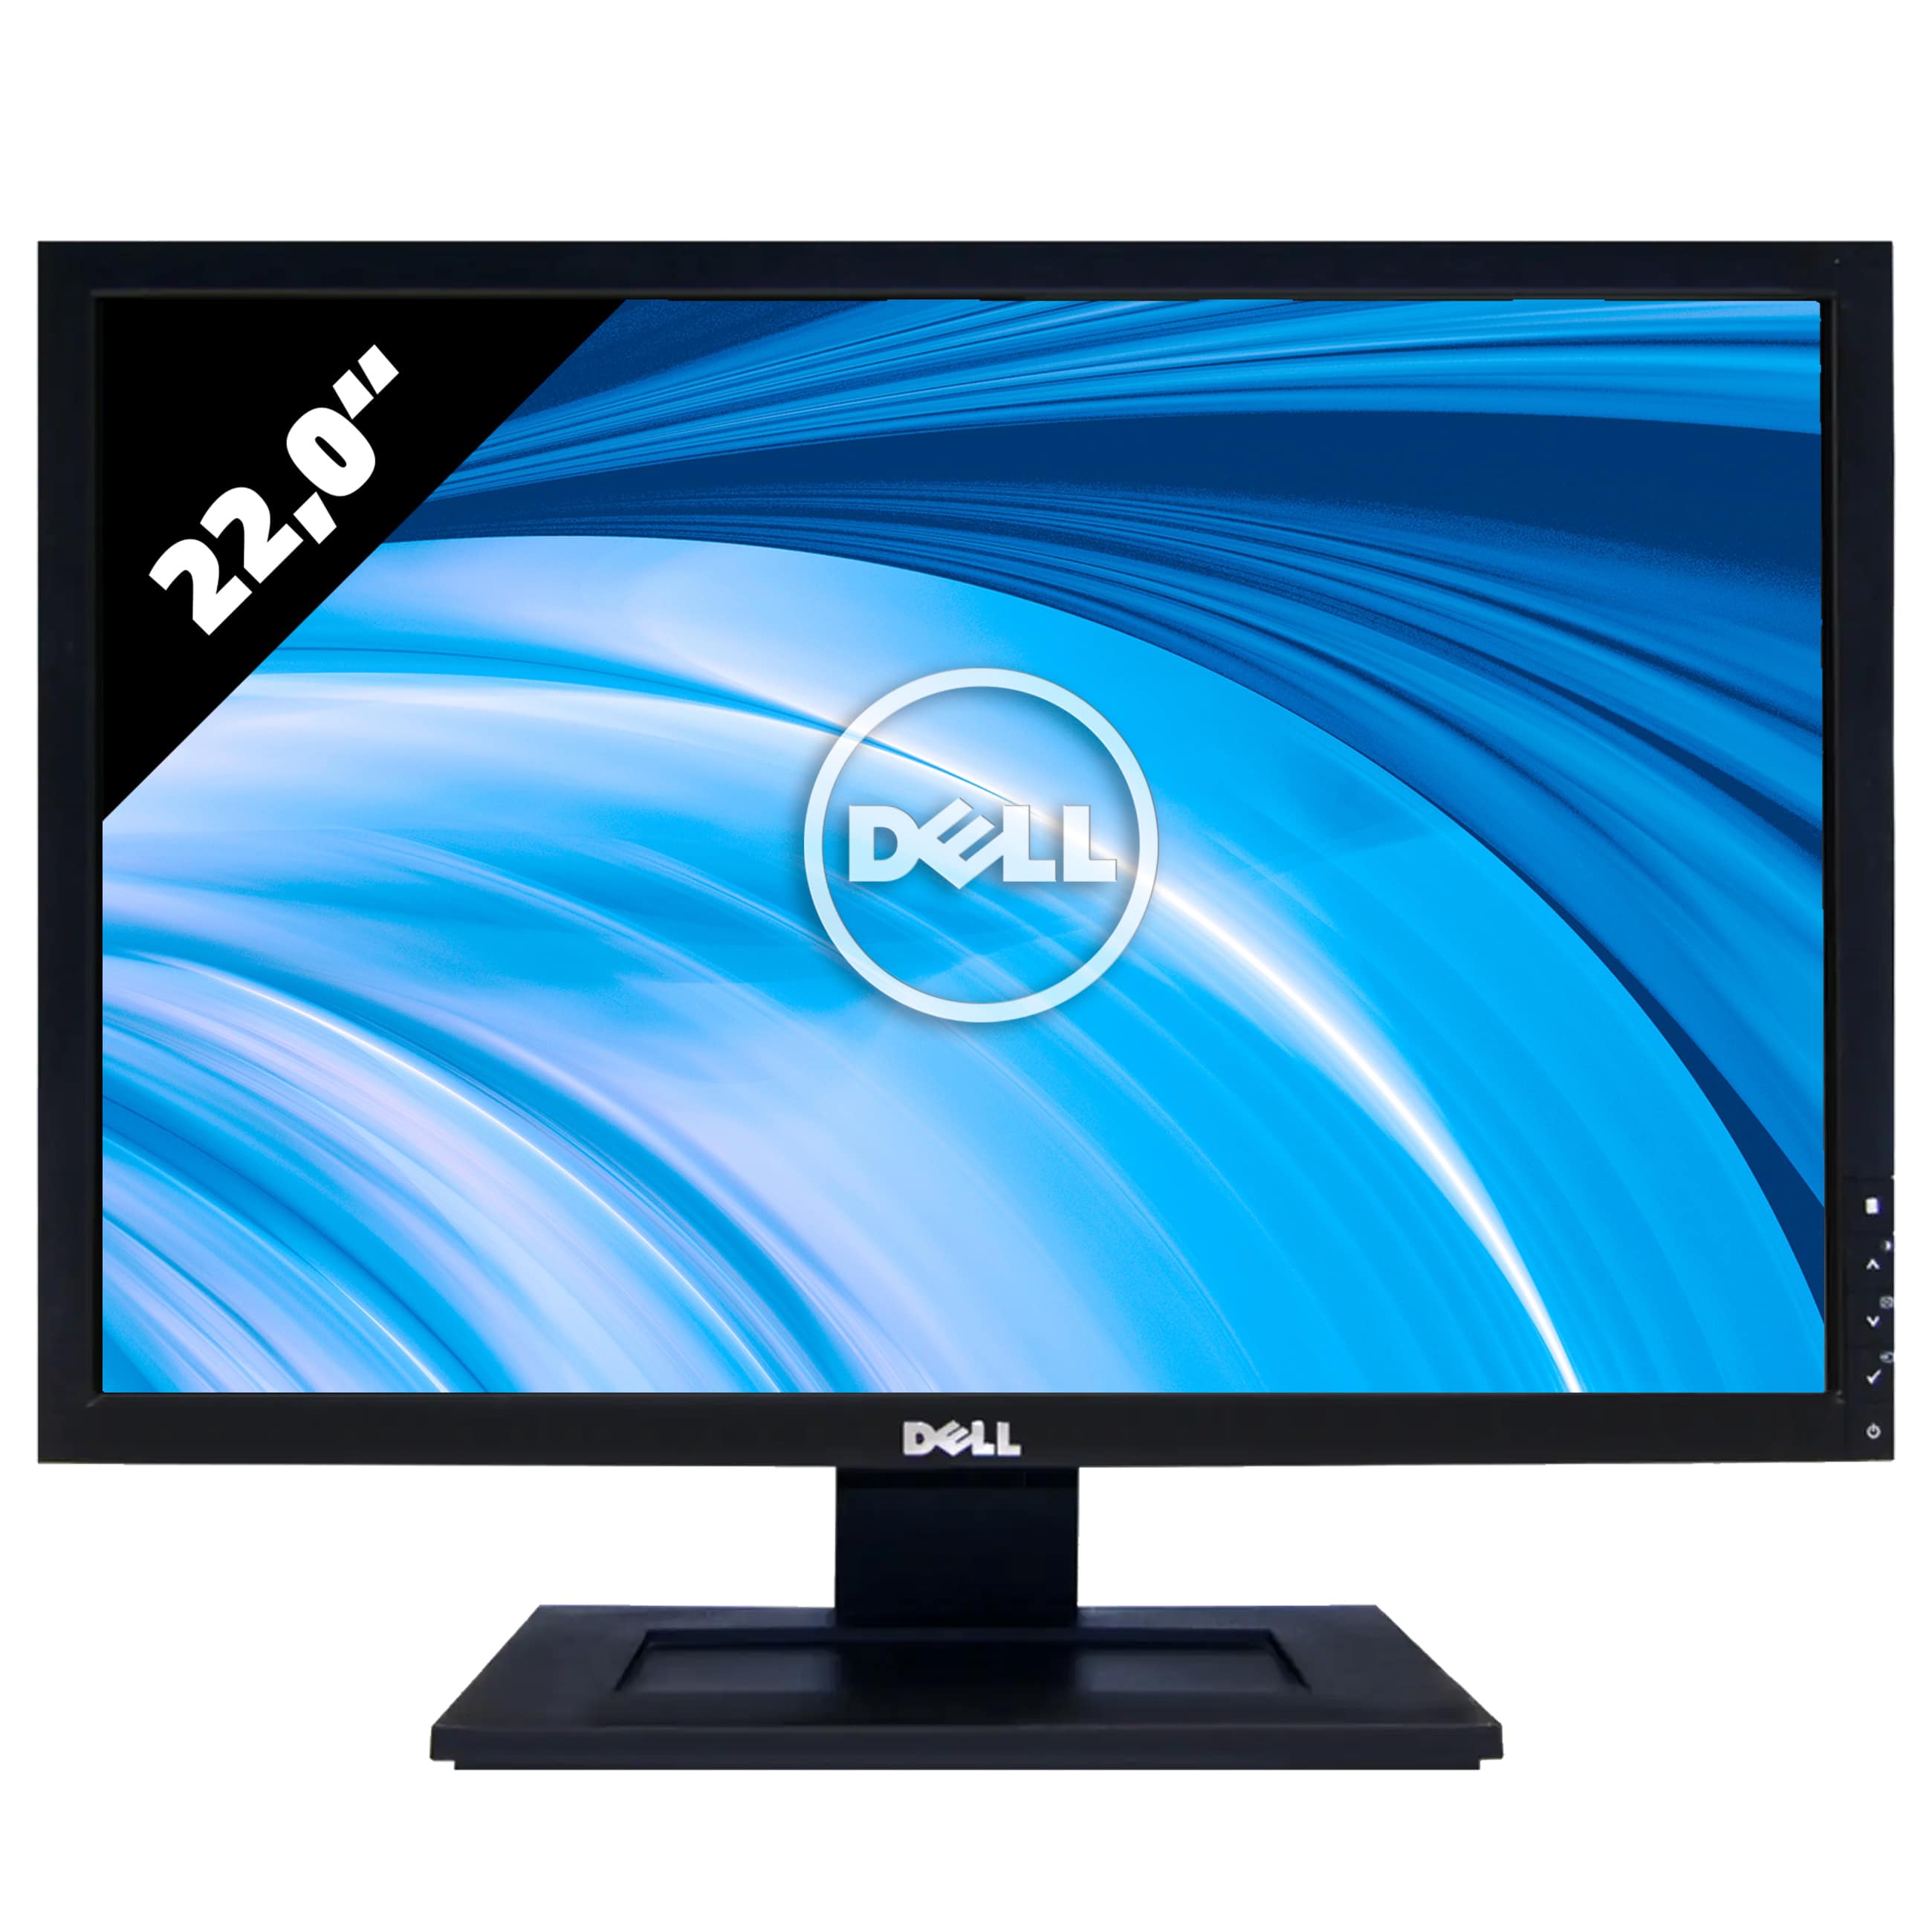 Image of Dell 2209WA - 1680 x 1050 - WSXGA+Gut - AfB-refurbished